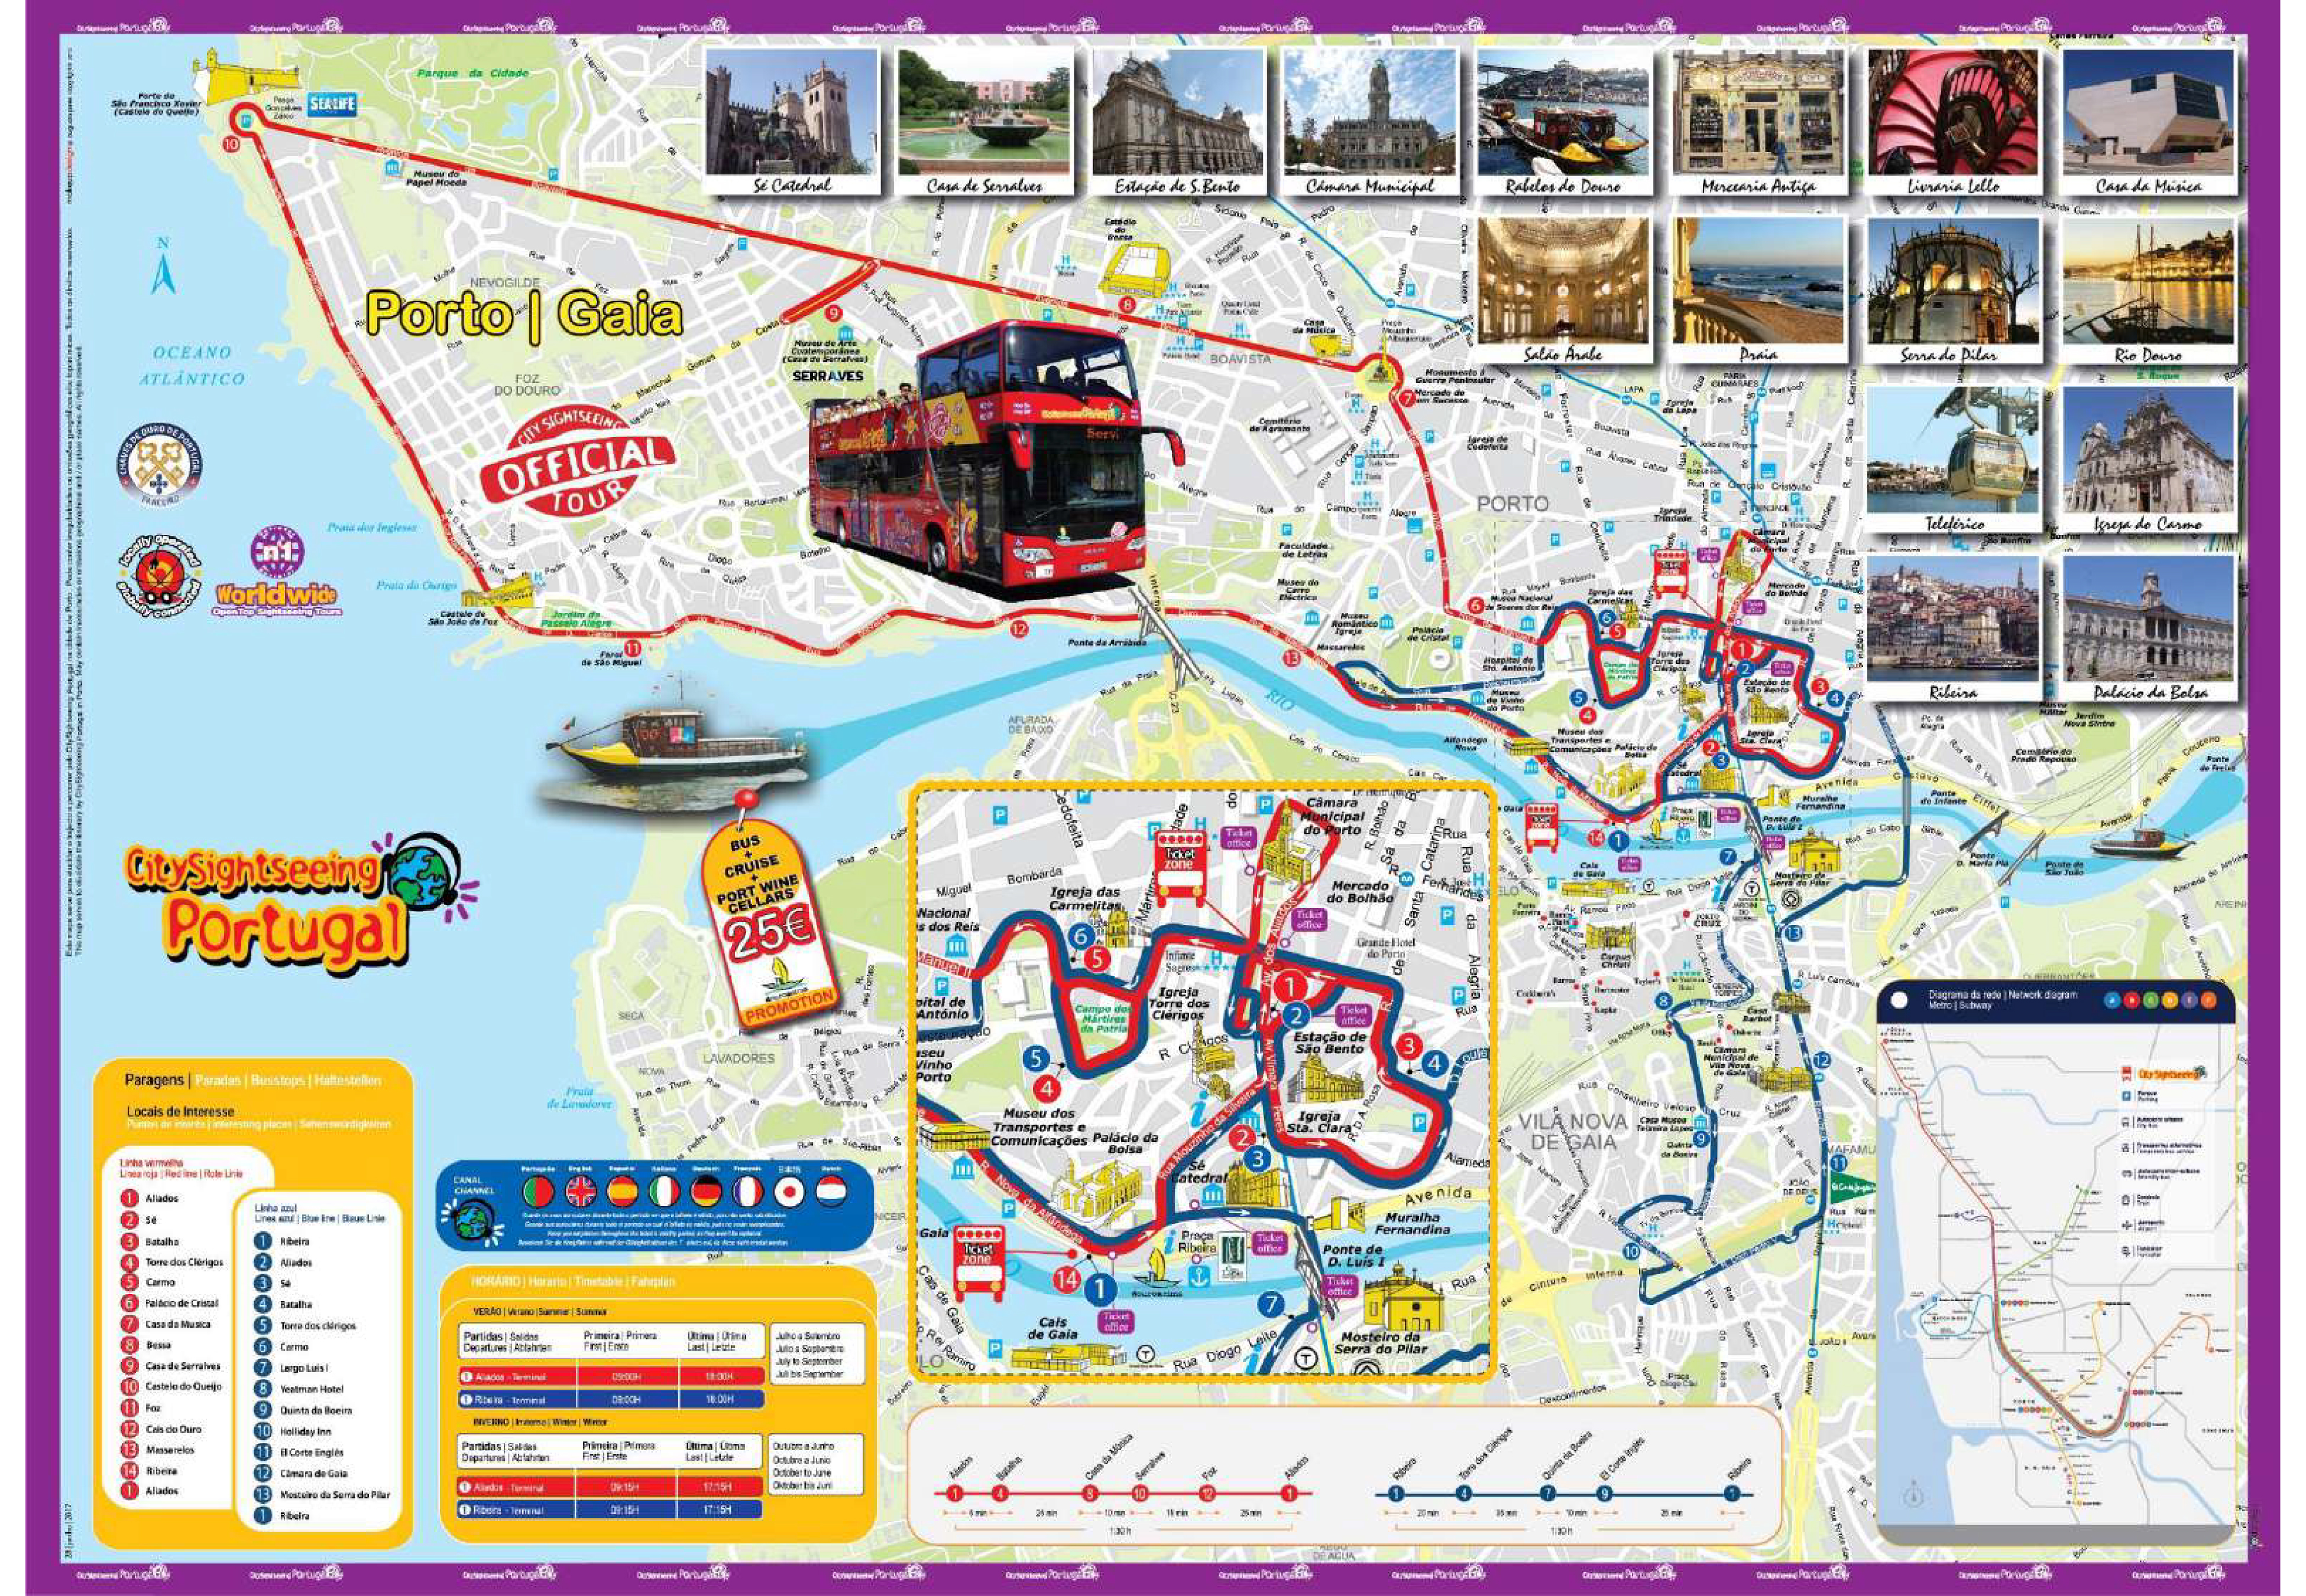 bus city tour porto portugal